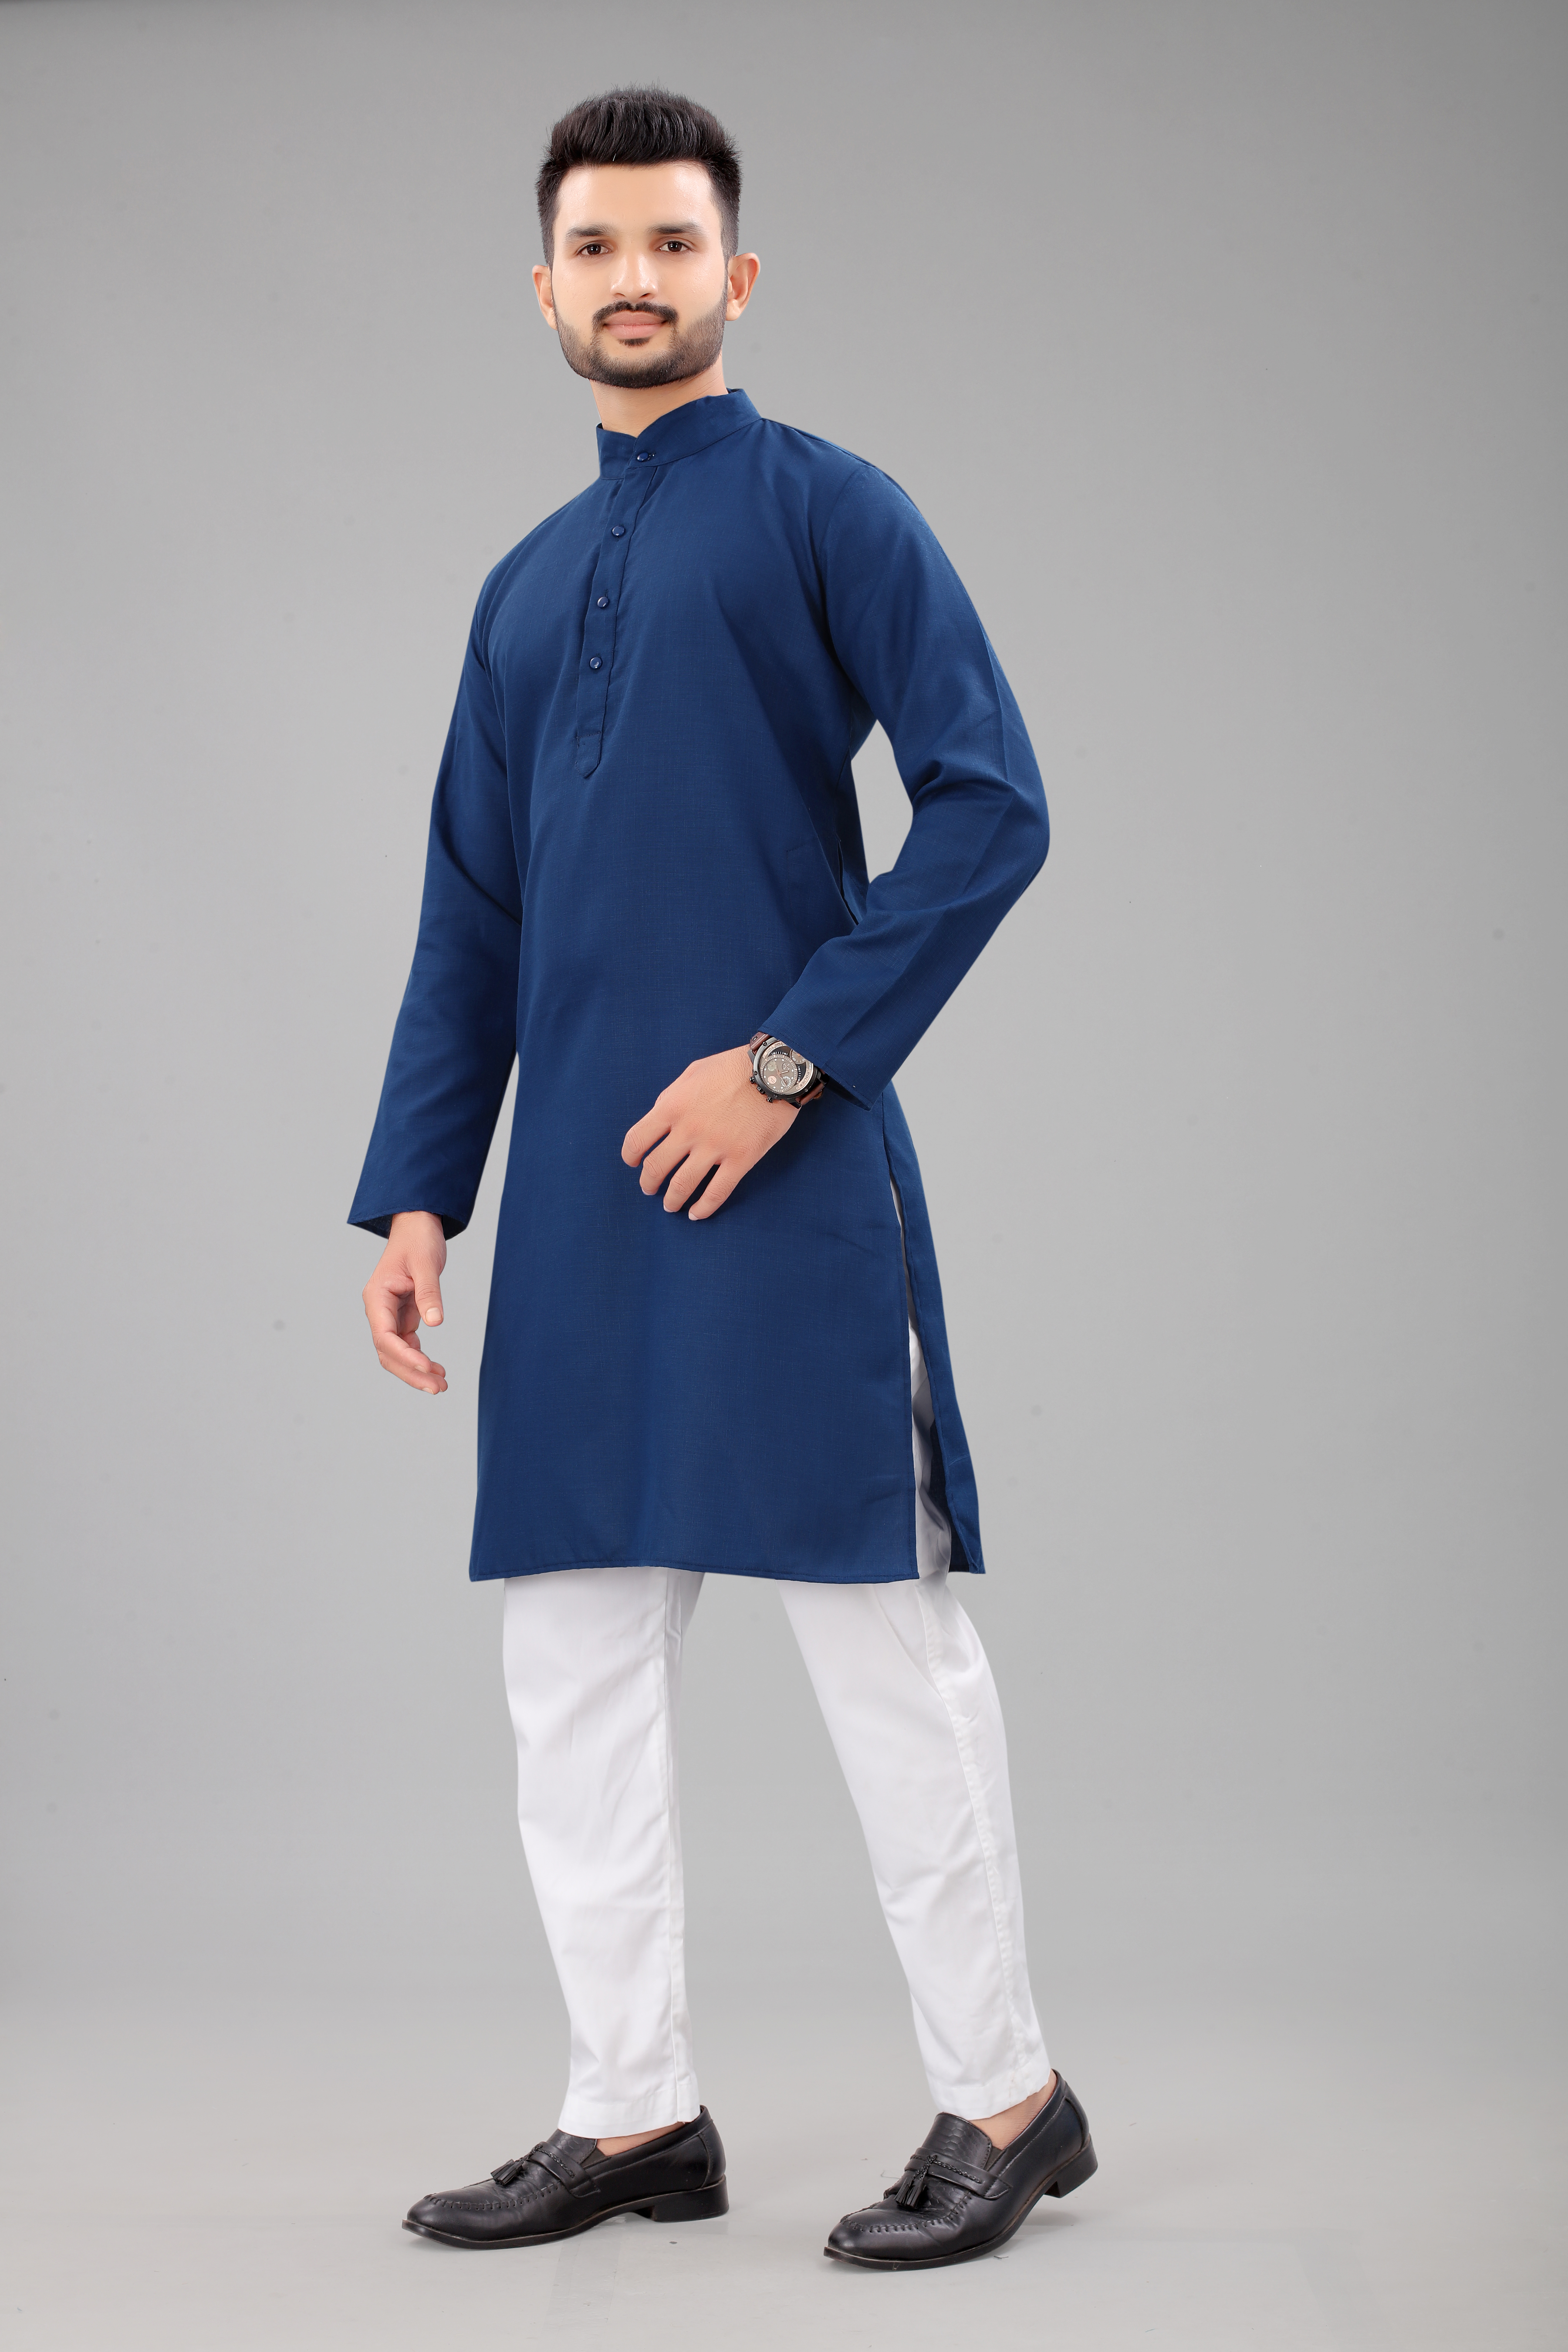 Blue Colors Plain Kurta Pajama For Men Online In Surat